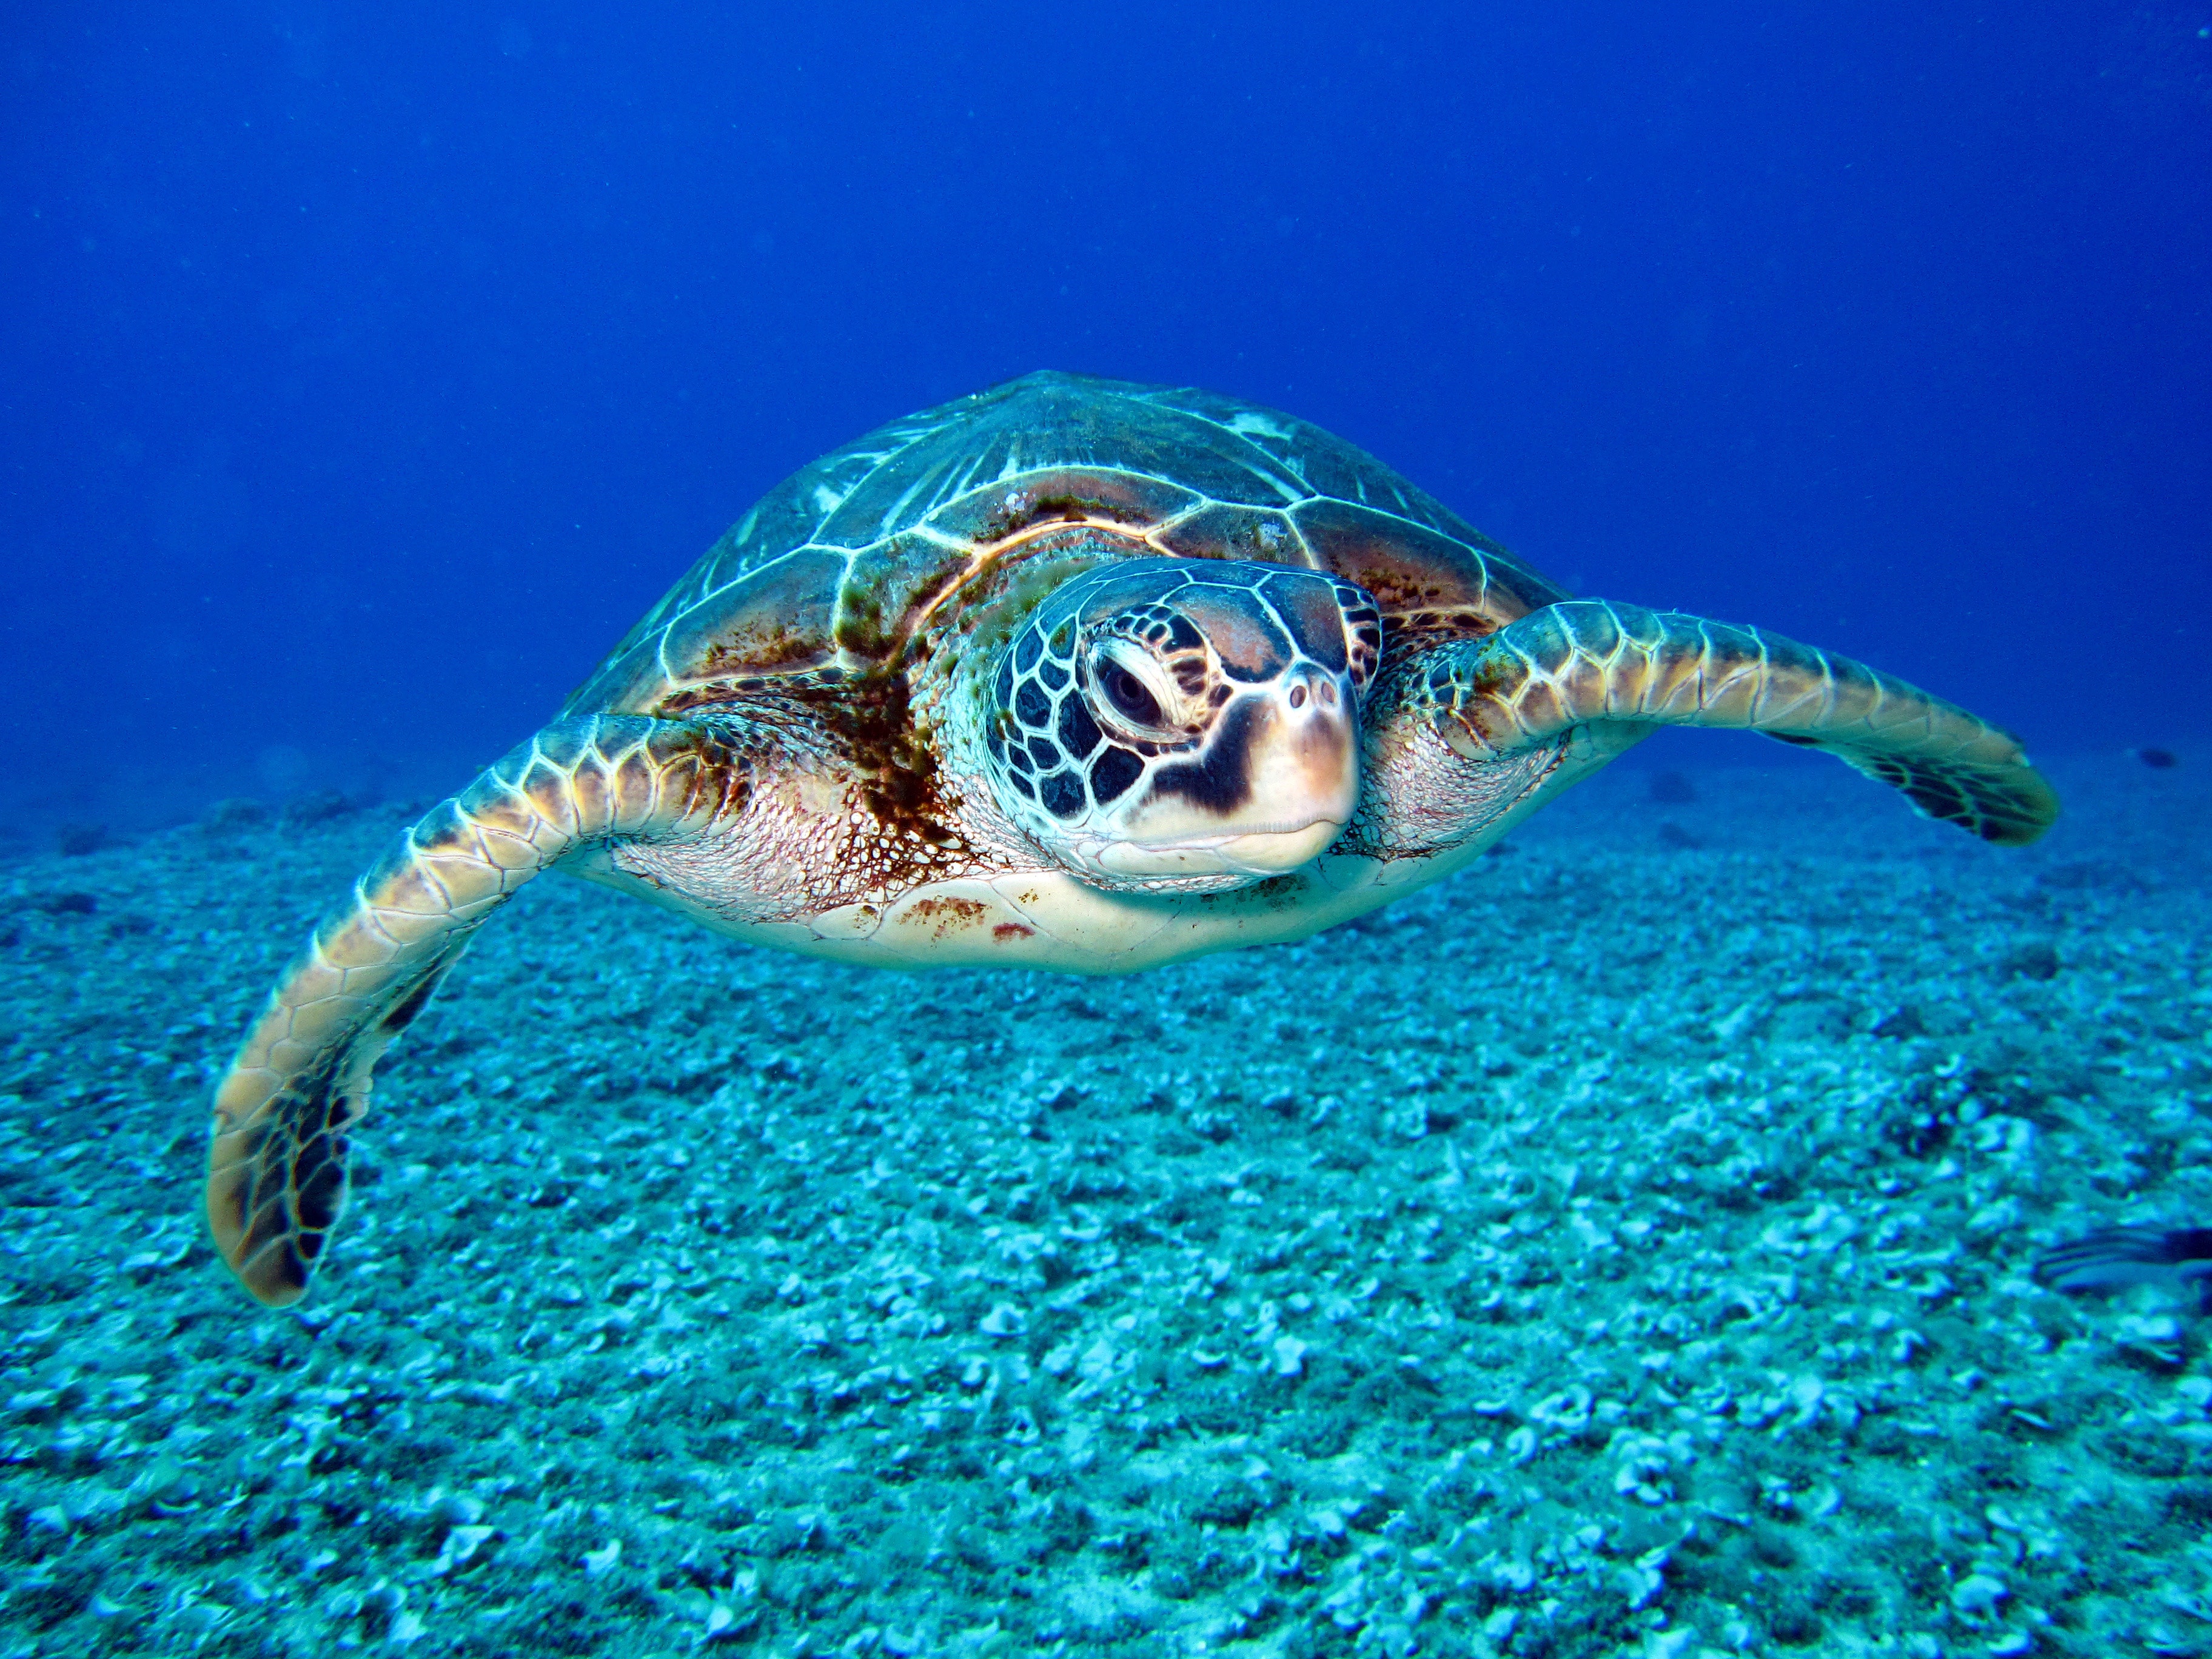 turtle-aquatic-marine-life-1618606.jpg